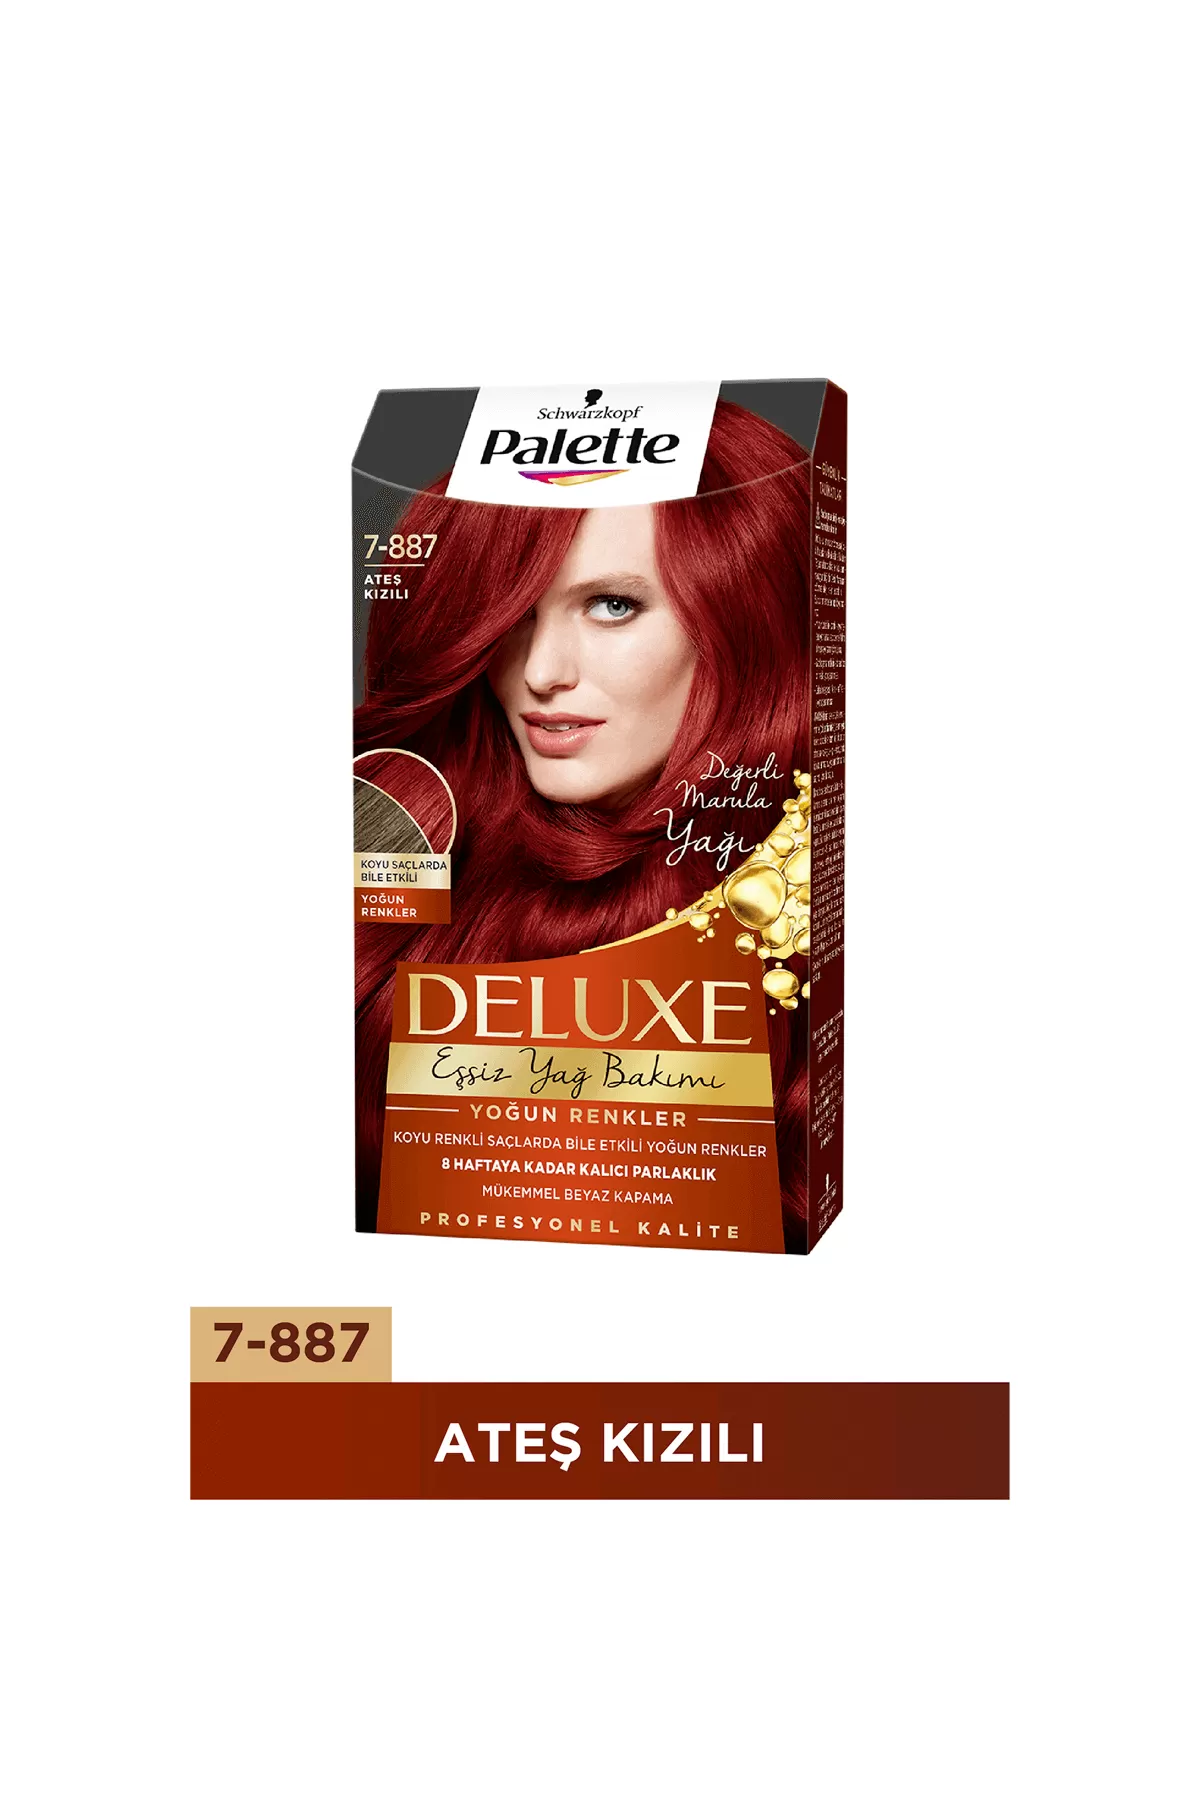 رنگ مو رنگ دهی یک دست تقویت مو پالت Palette رنگ مو قرمز آتشین شماره 7 887